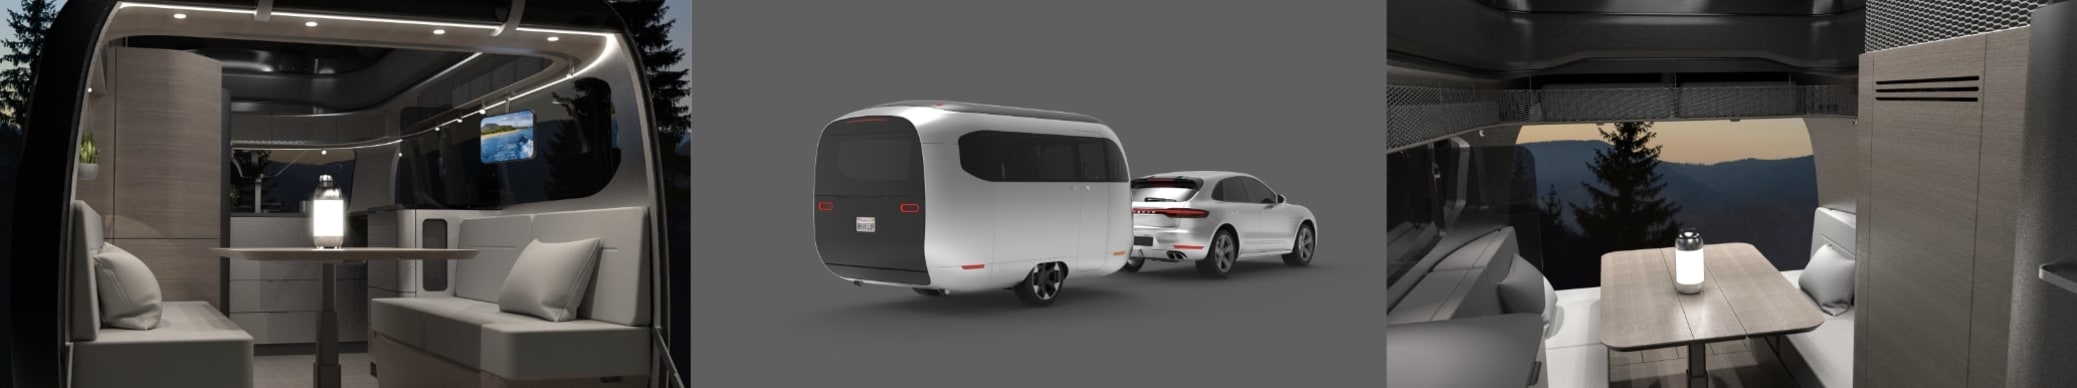 Airstream ve Porsche, SXSW'de elektrikli karavan kombinasyonunu gösteriyor